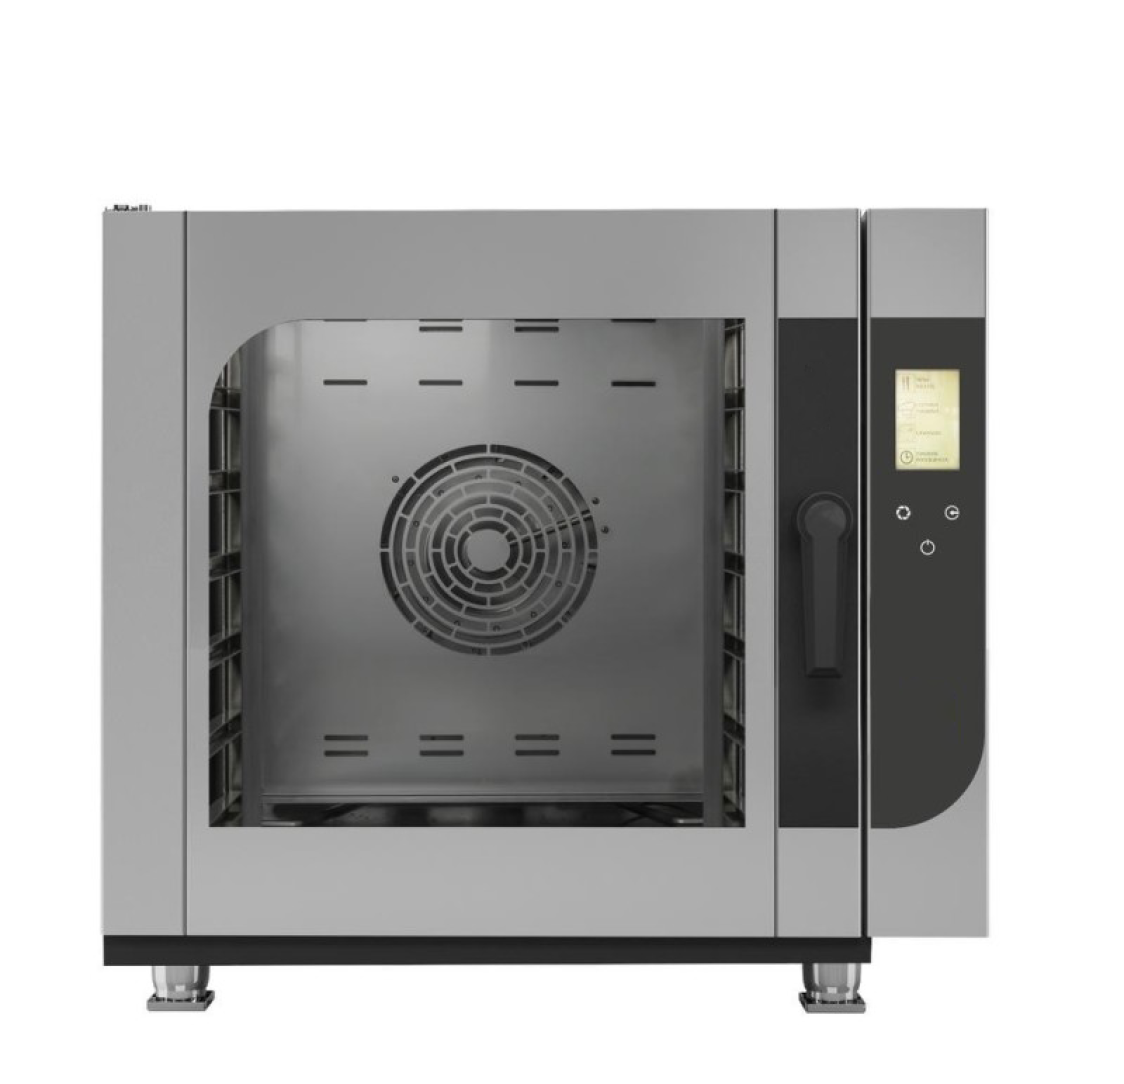 Forno A Gás Misto Digital 6 Gn1/1-60×40 Full Touch com controlo de humidade e lavagem automática